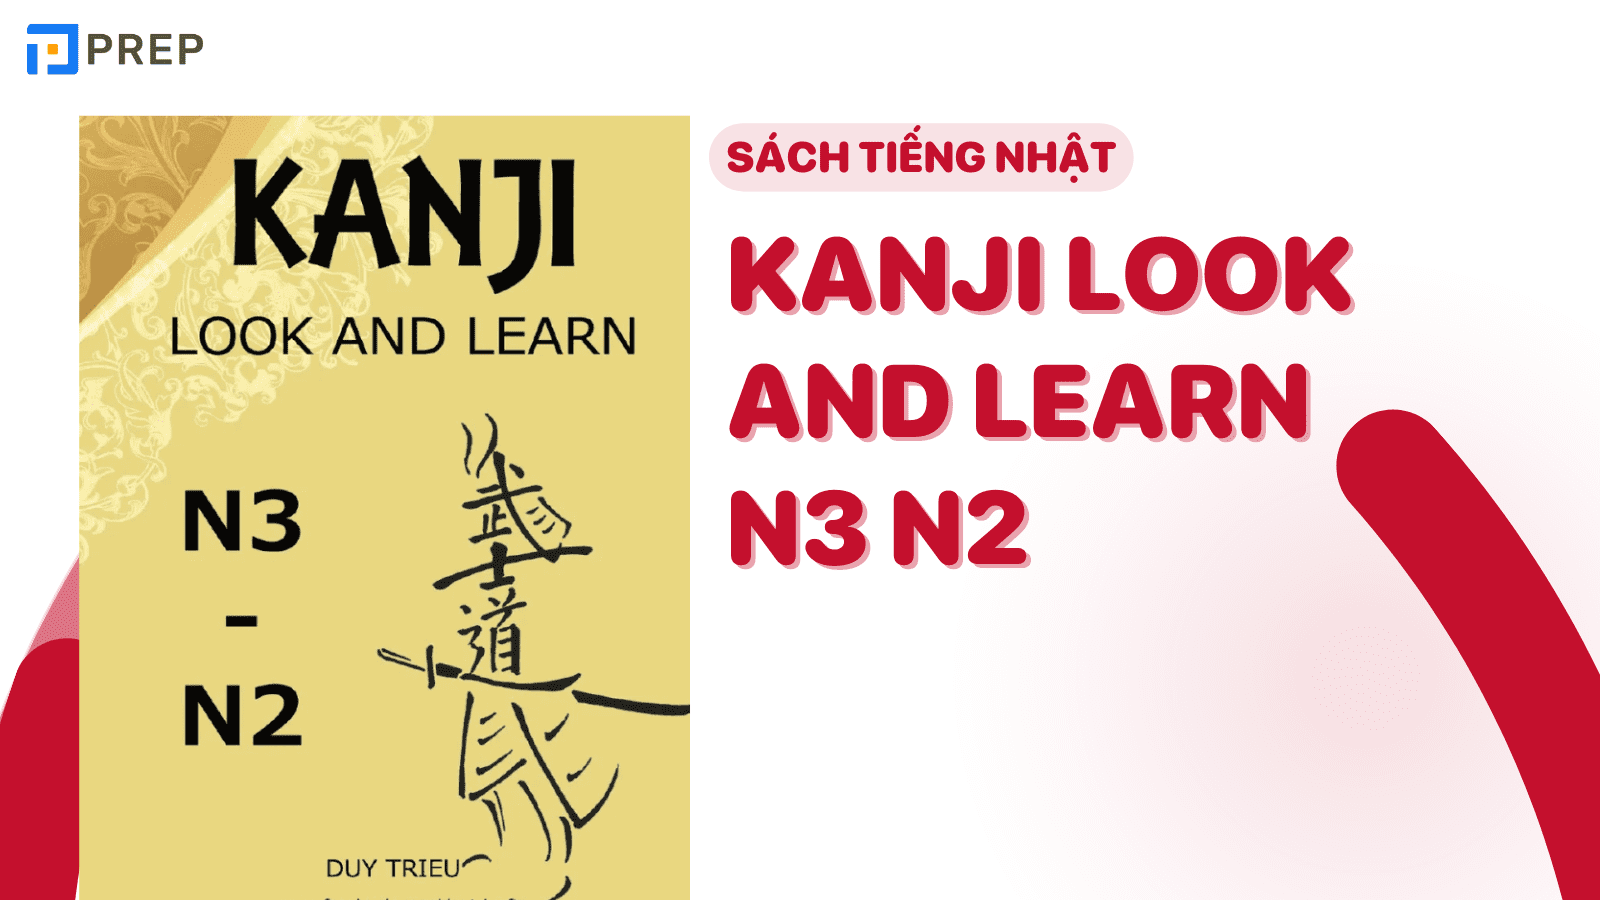 "N3 có bao nhiêu chữ Kanji?" - Bí quyết chinh phục Kanji N3 dễ dàng